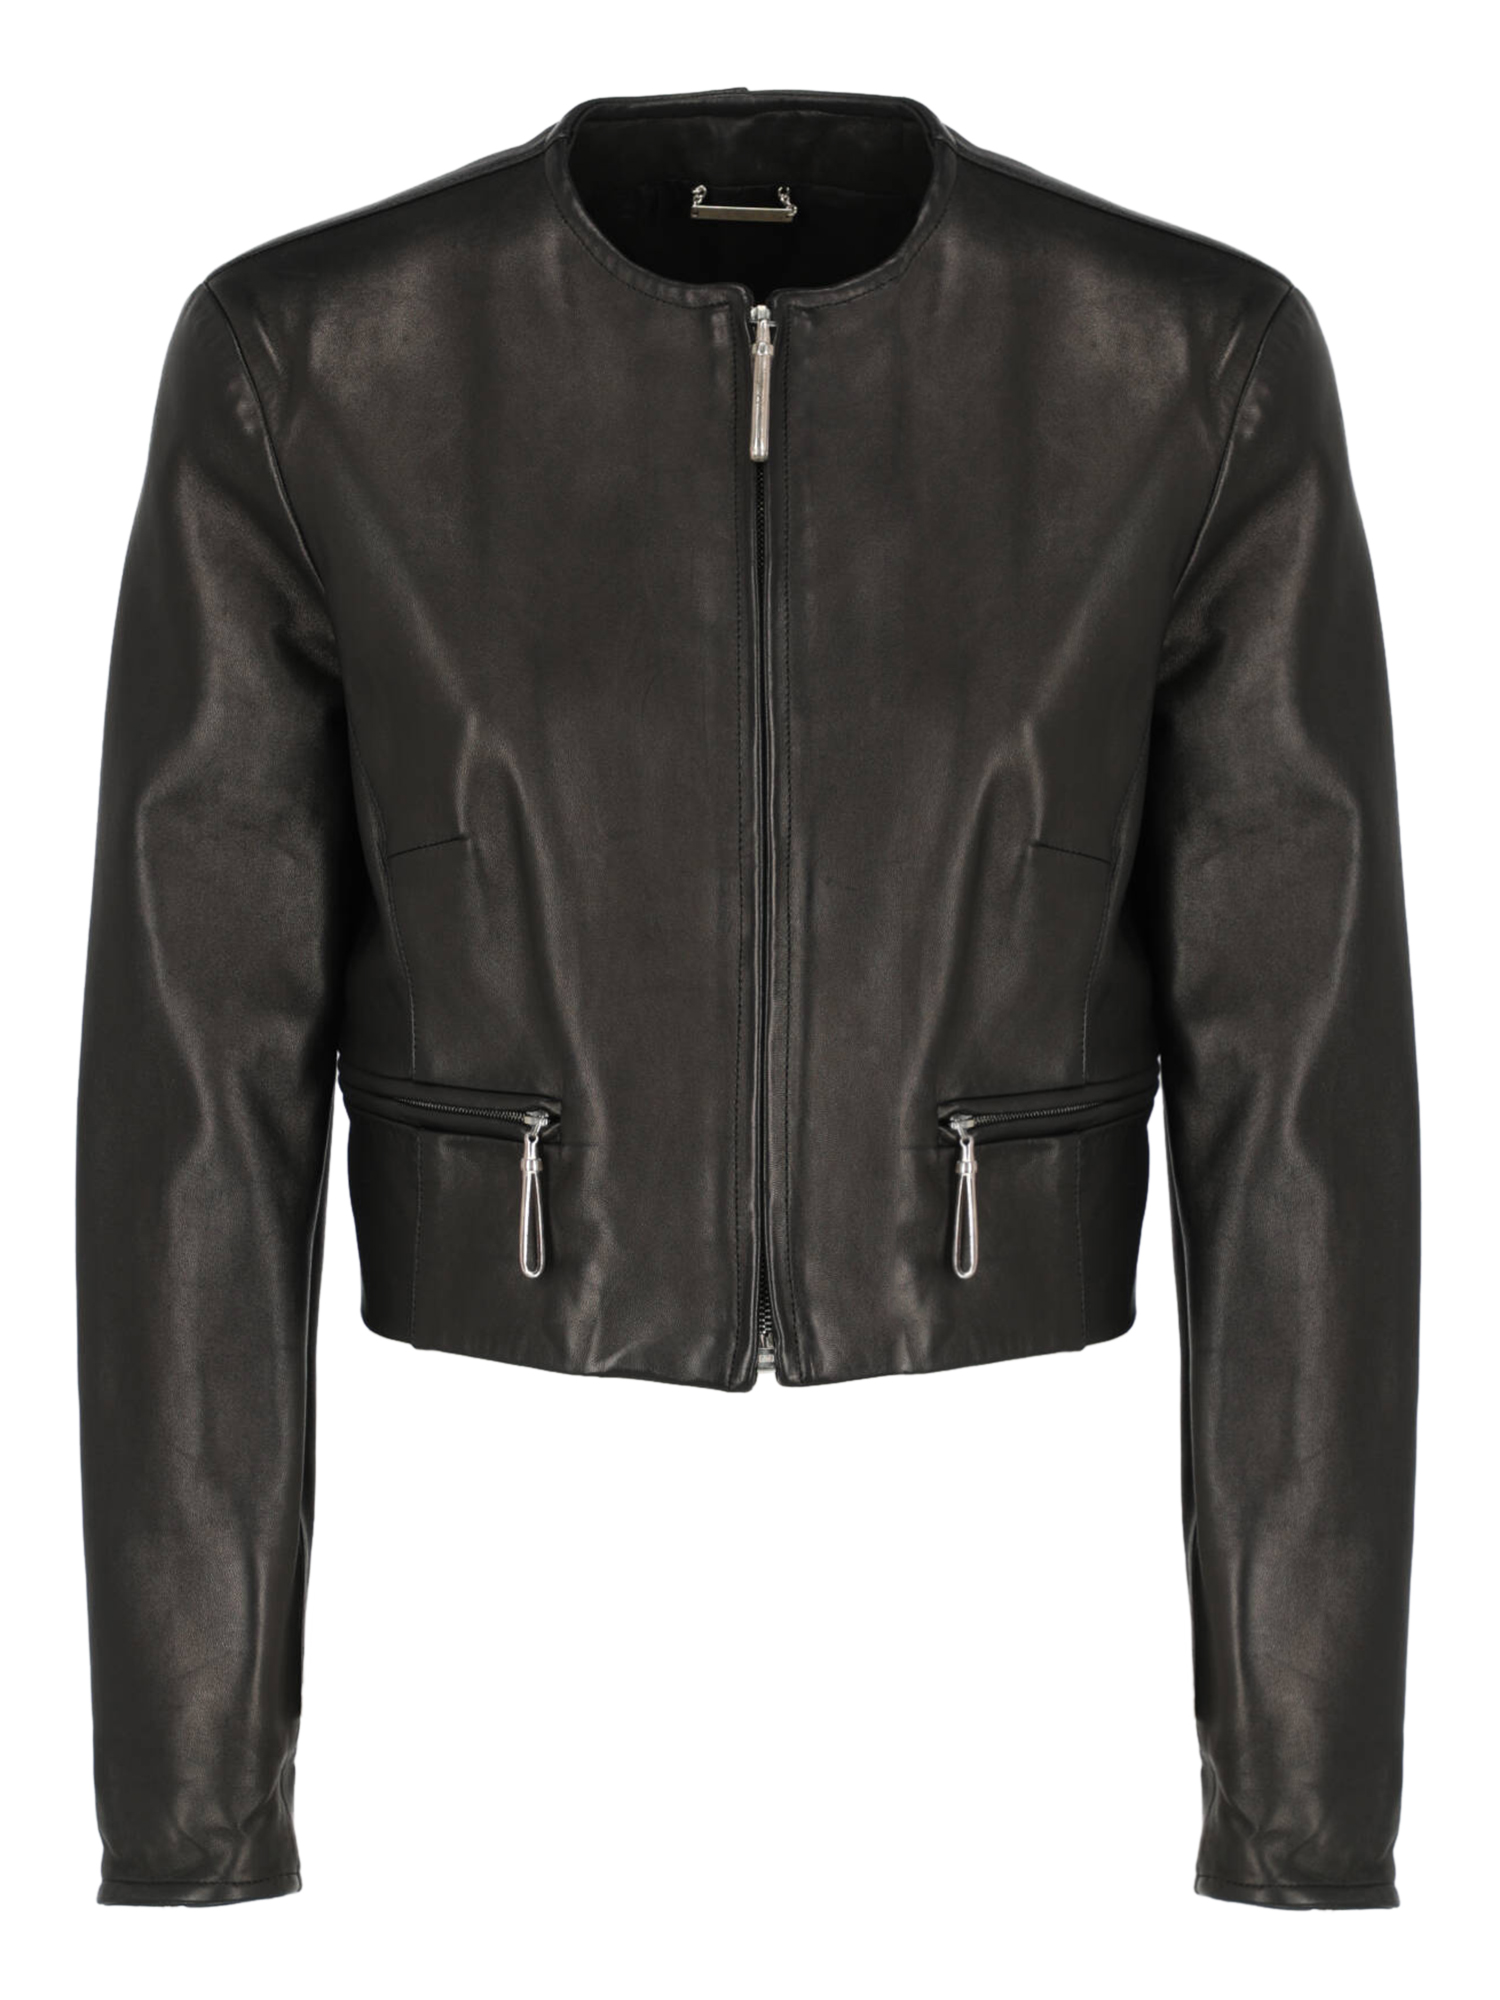 Vestes Pour Femme - Gianfranco Ferre - En Leather Black - Taille:  -